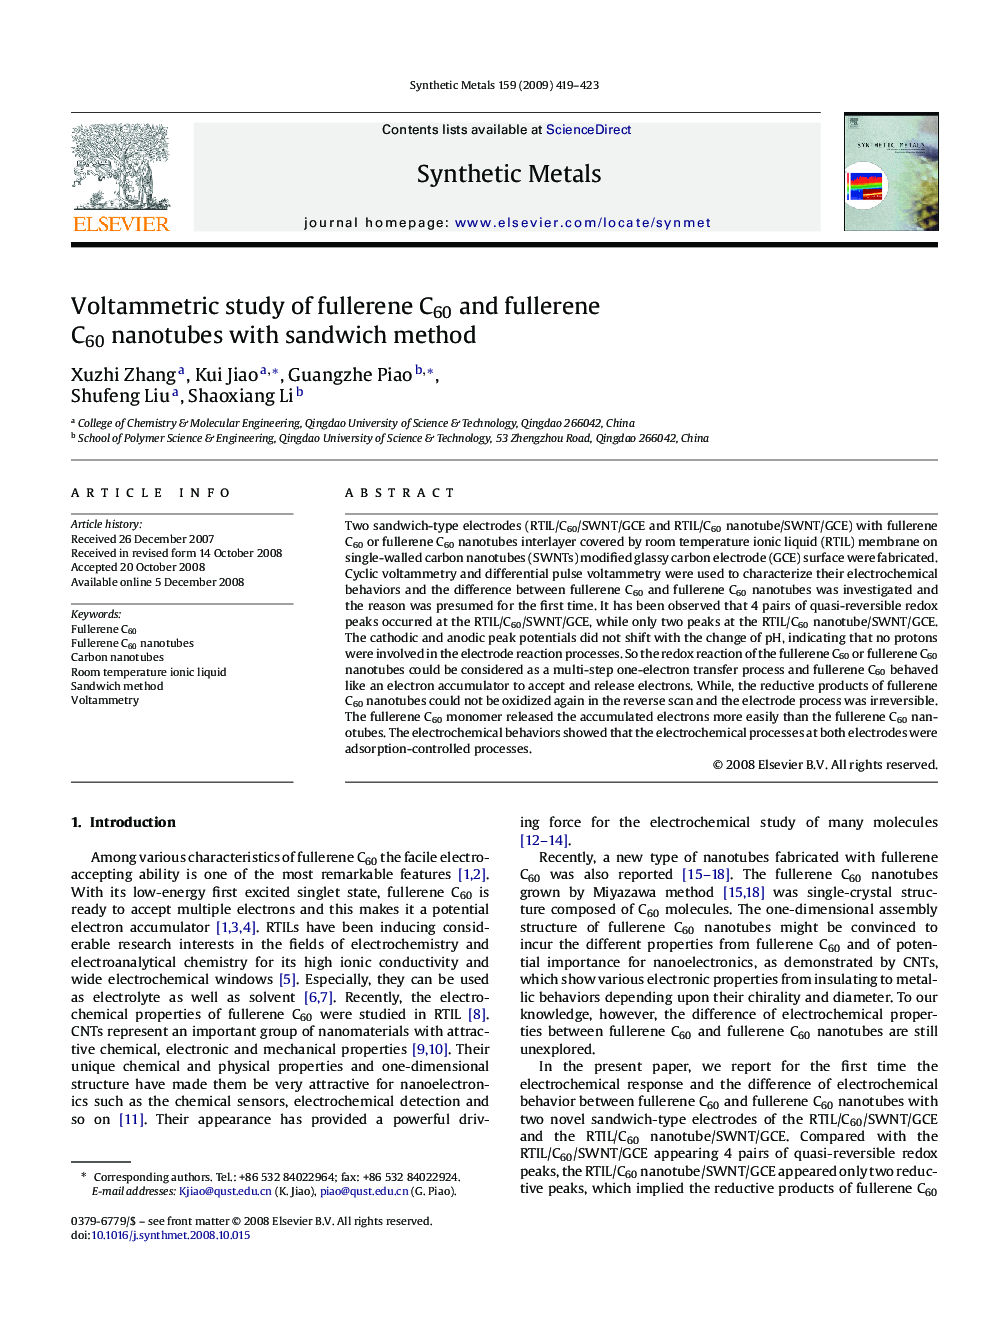 Voltammetric study of fullerene C60 and fullerene C60 nanotubes with sandwich method